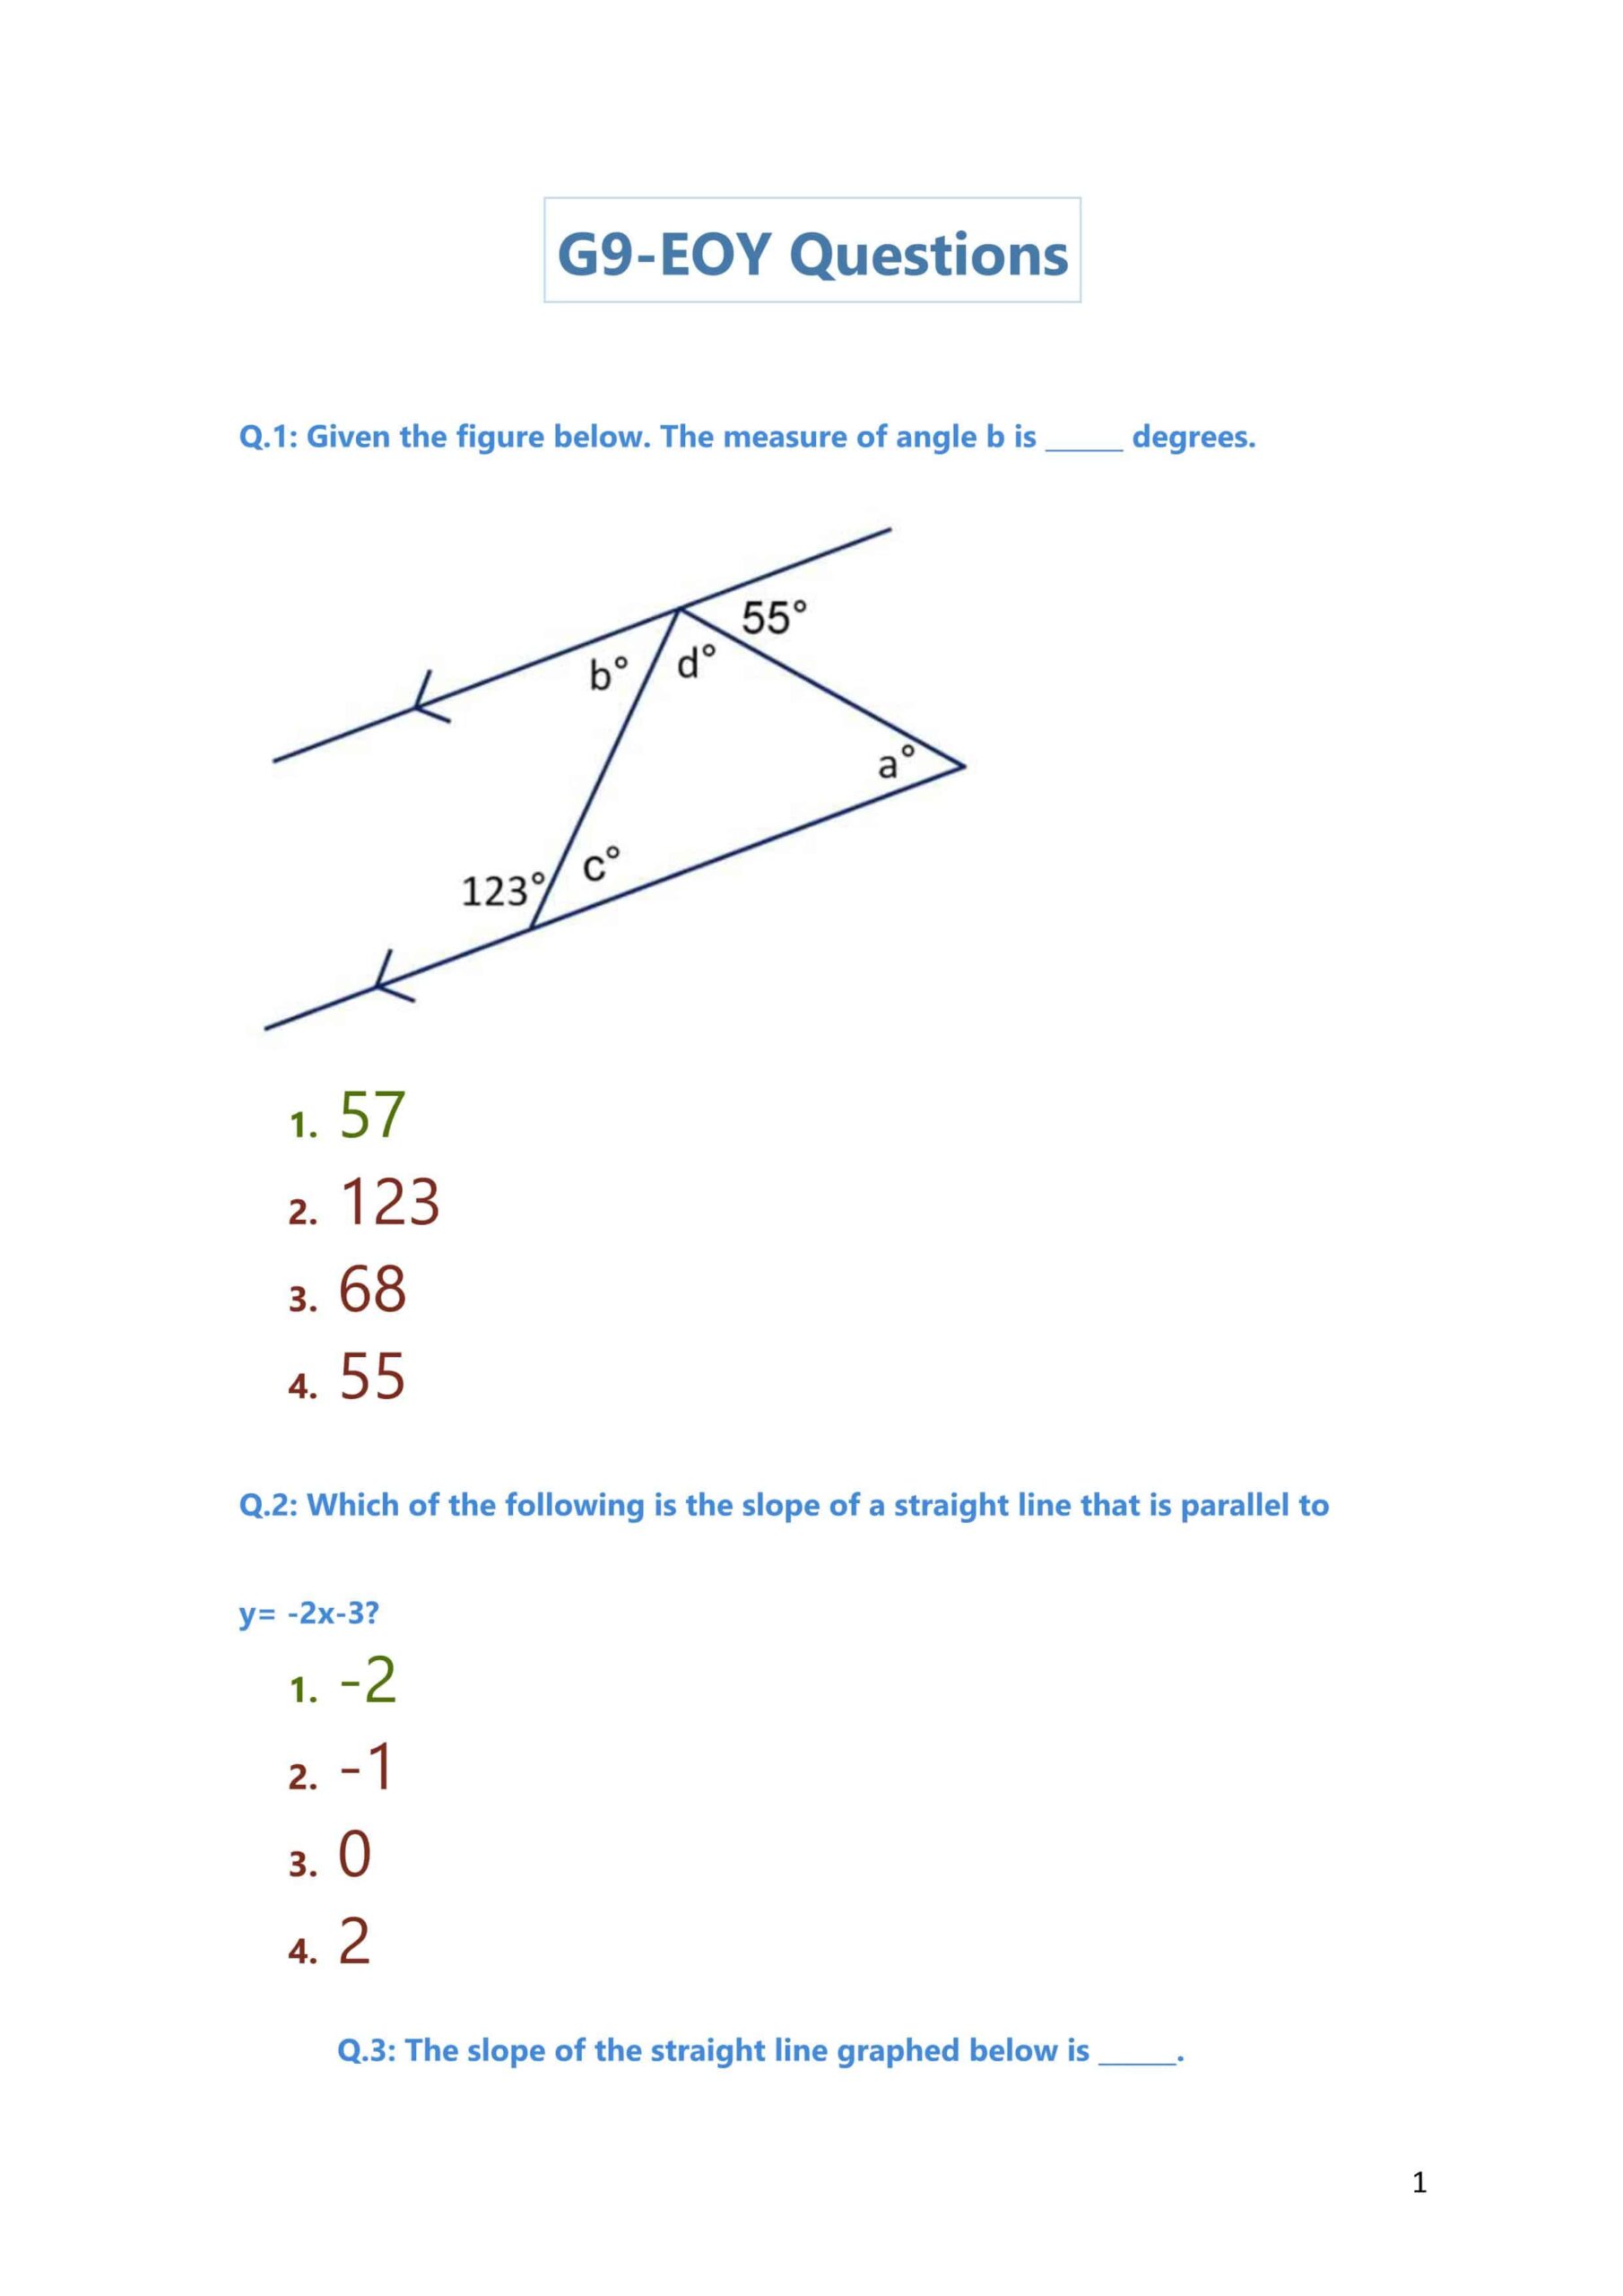 حل أسئلة متنوعة حسب الهيكلة بالإنجليزي الرياضيات المتكاملة الصف التاسع